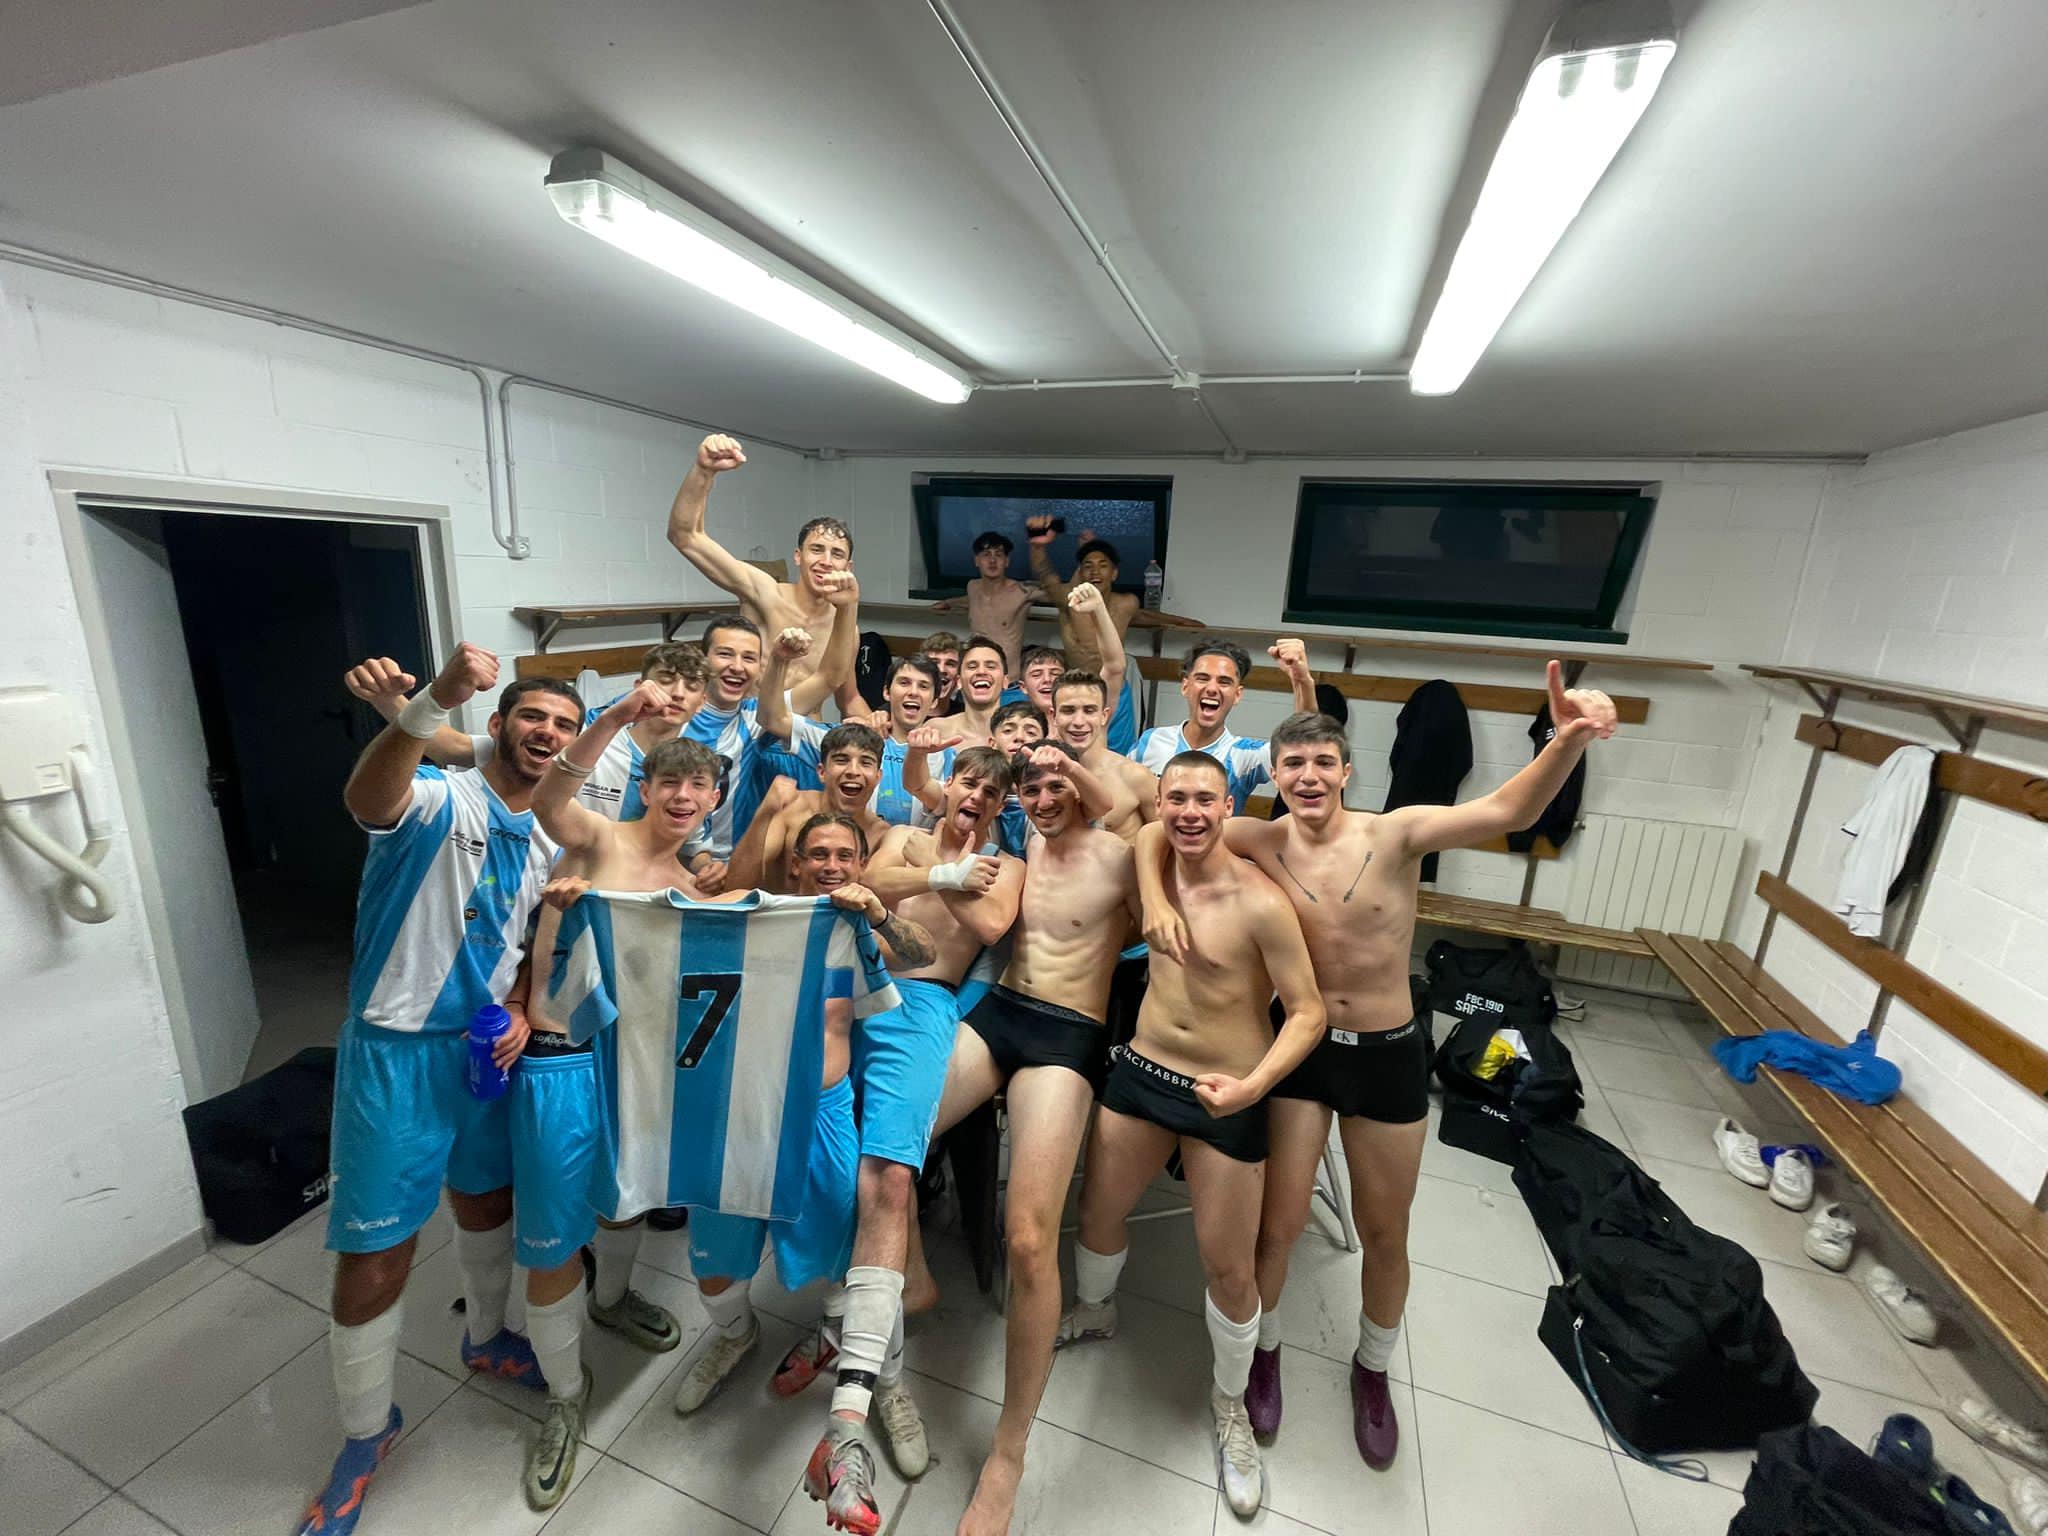 Calcio juniores, missione compiuta del Fbc Saronno a San Pellegrino: promozione in “serie A”